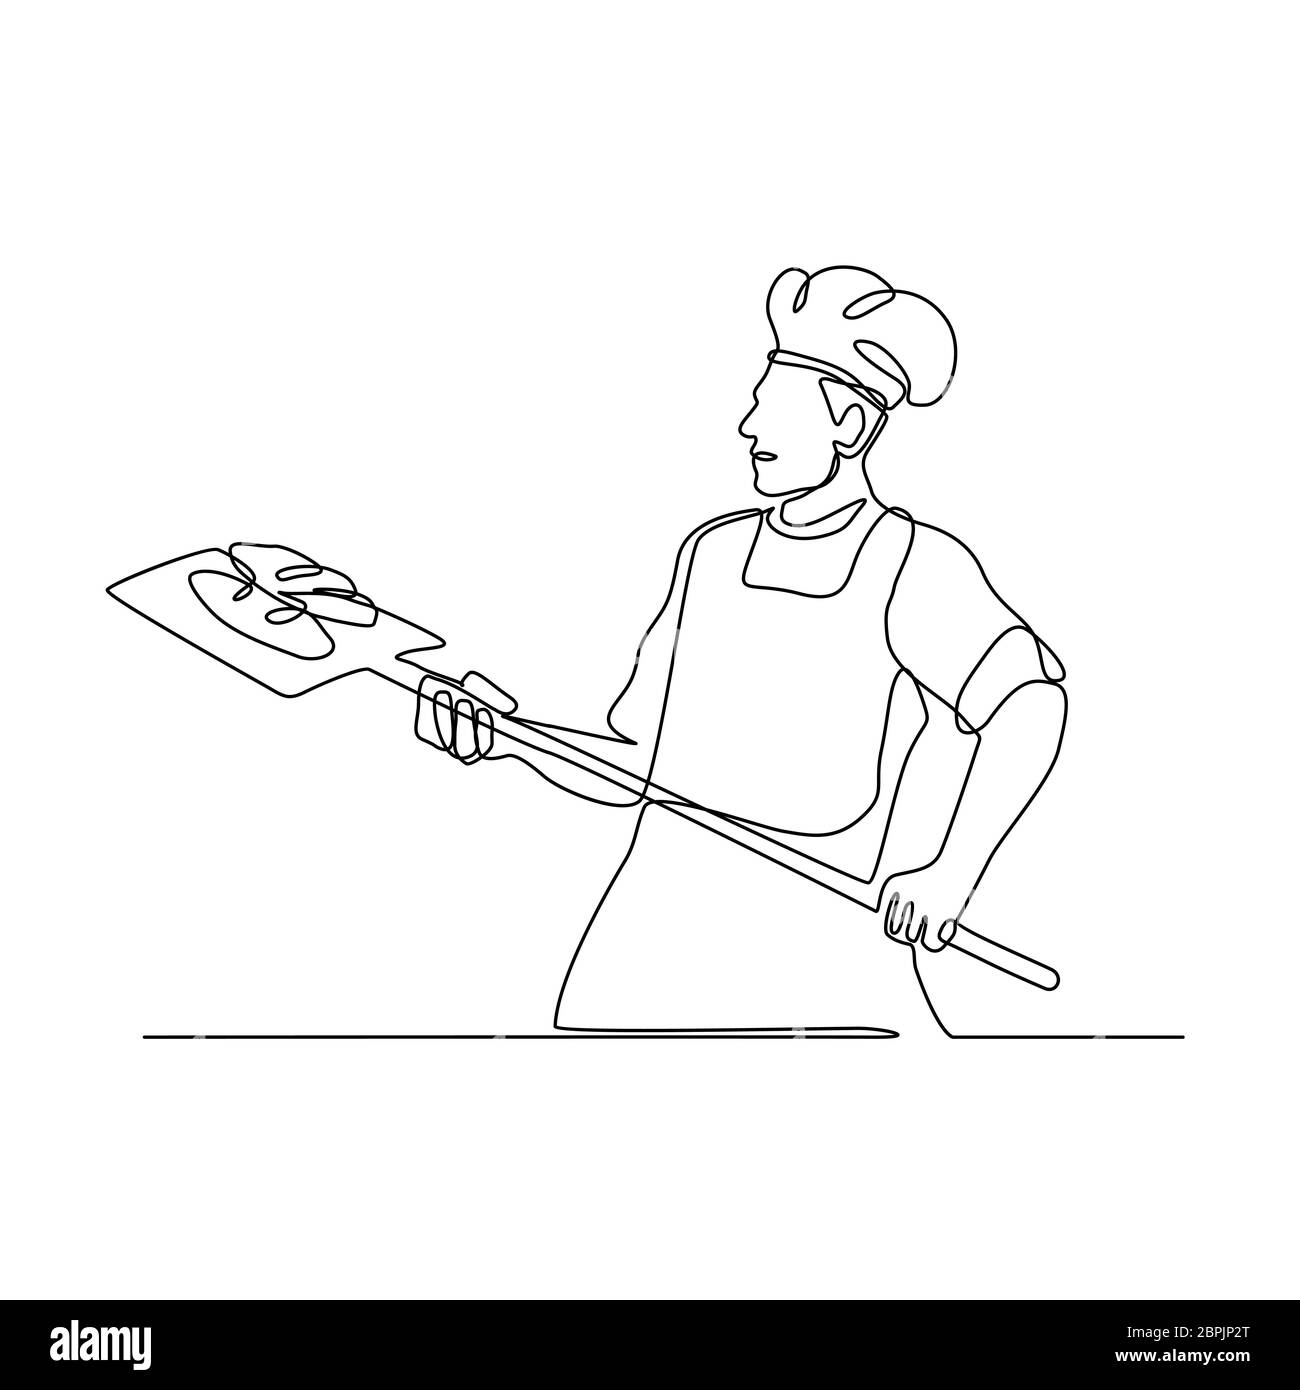 Linea continua illustrazione di un fornaio tenendo un forno pelare visto dal lato fatto in bianco e nero in stile monolinea. Foto Stock